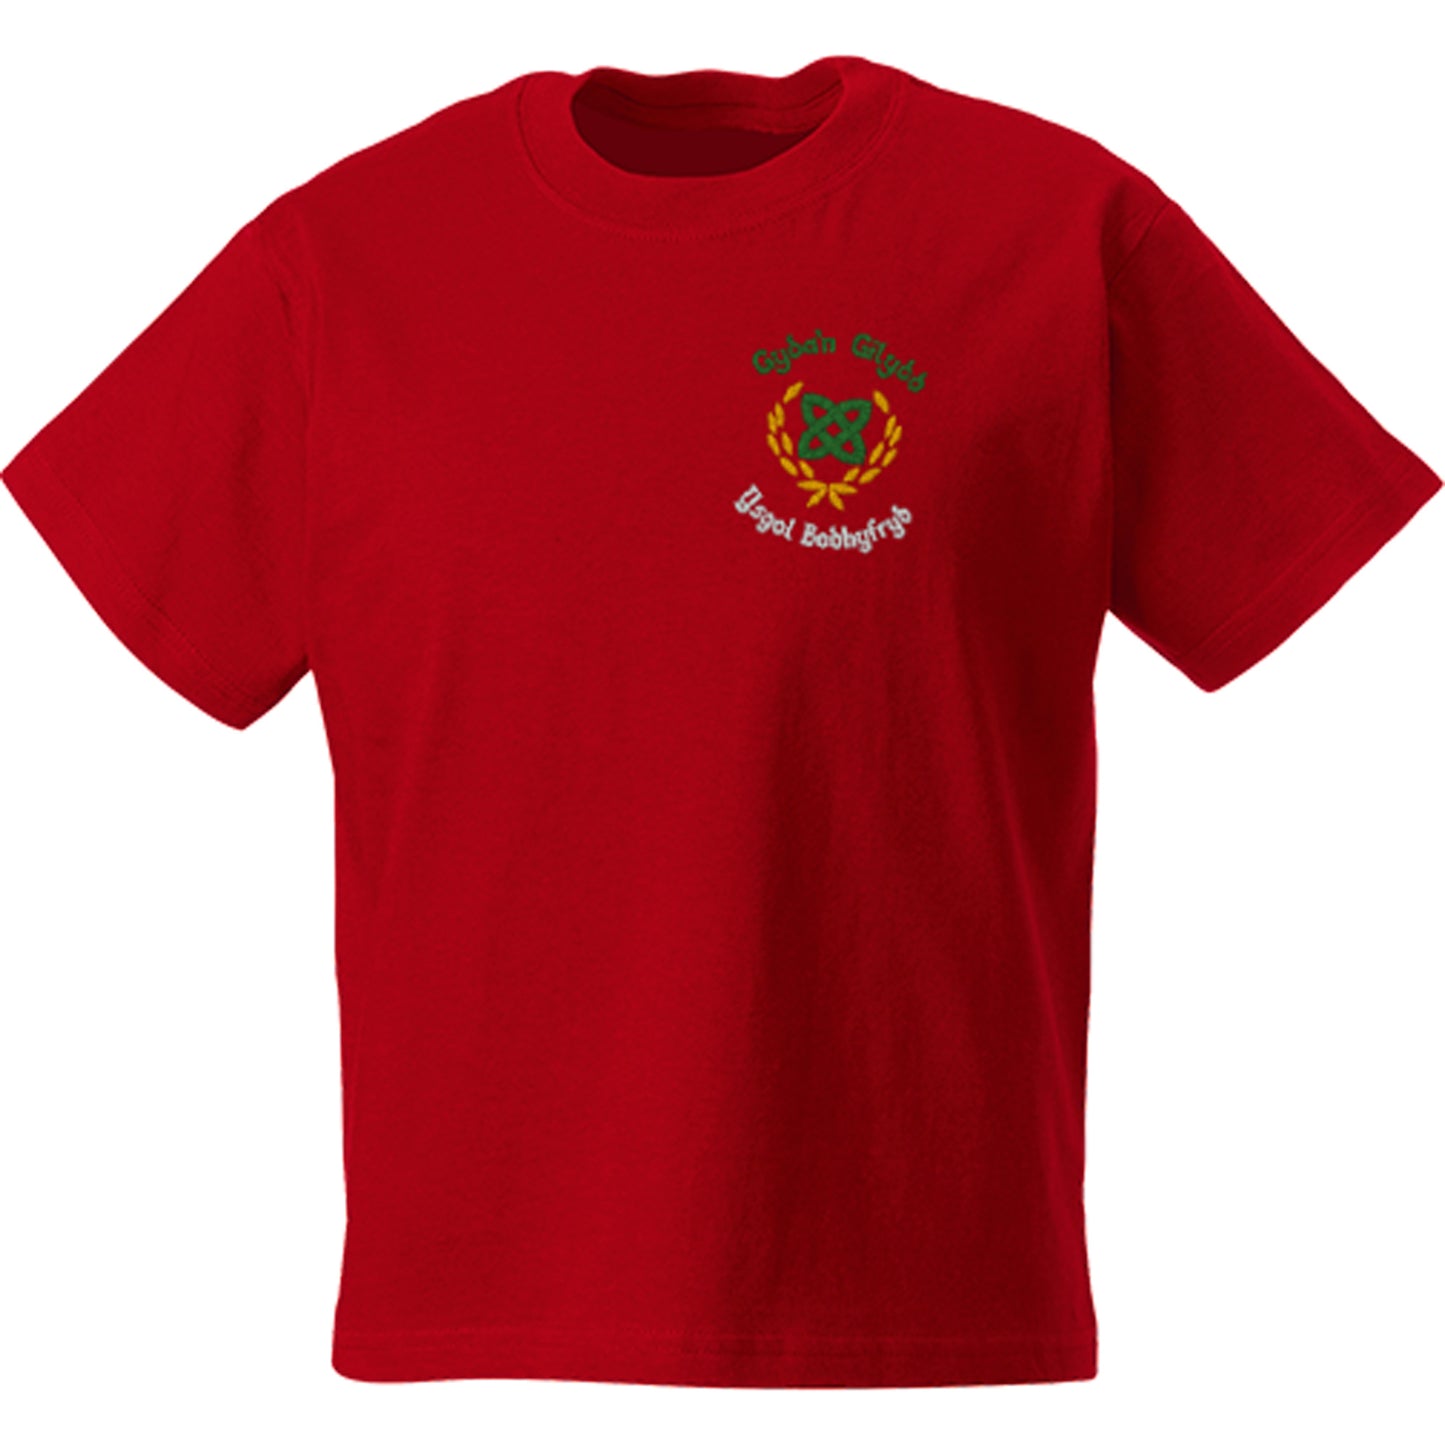 Ysgol Bodhyfryd T-Shirts are supplied by ourschoolwear of Wrexham